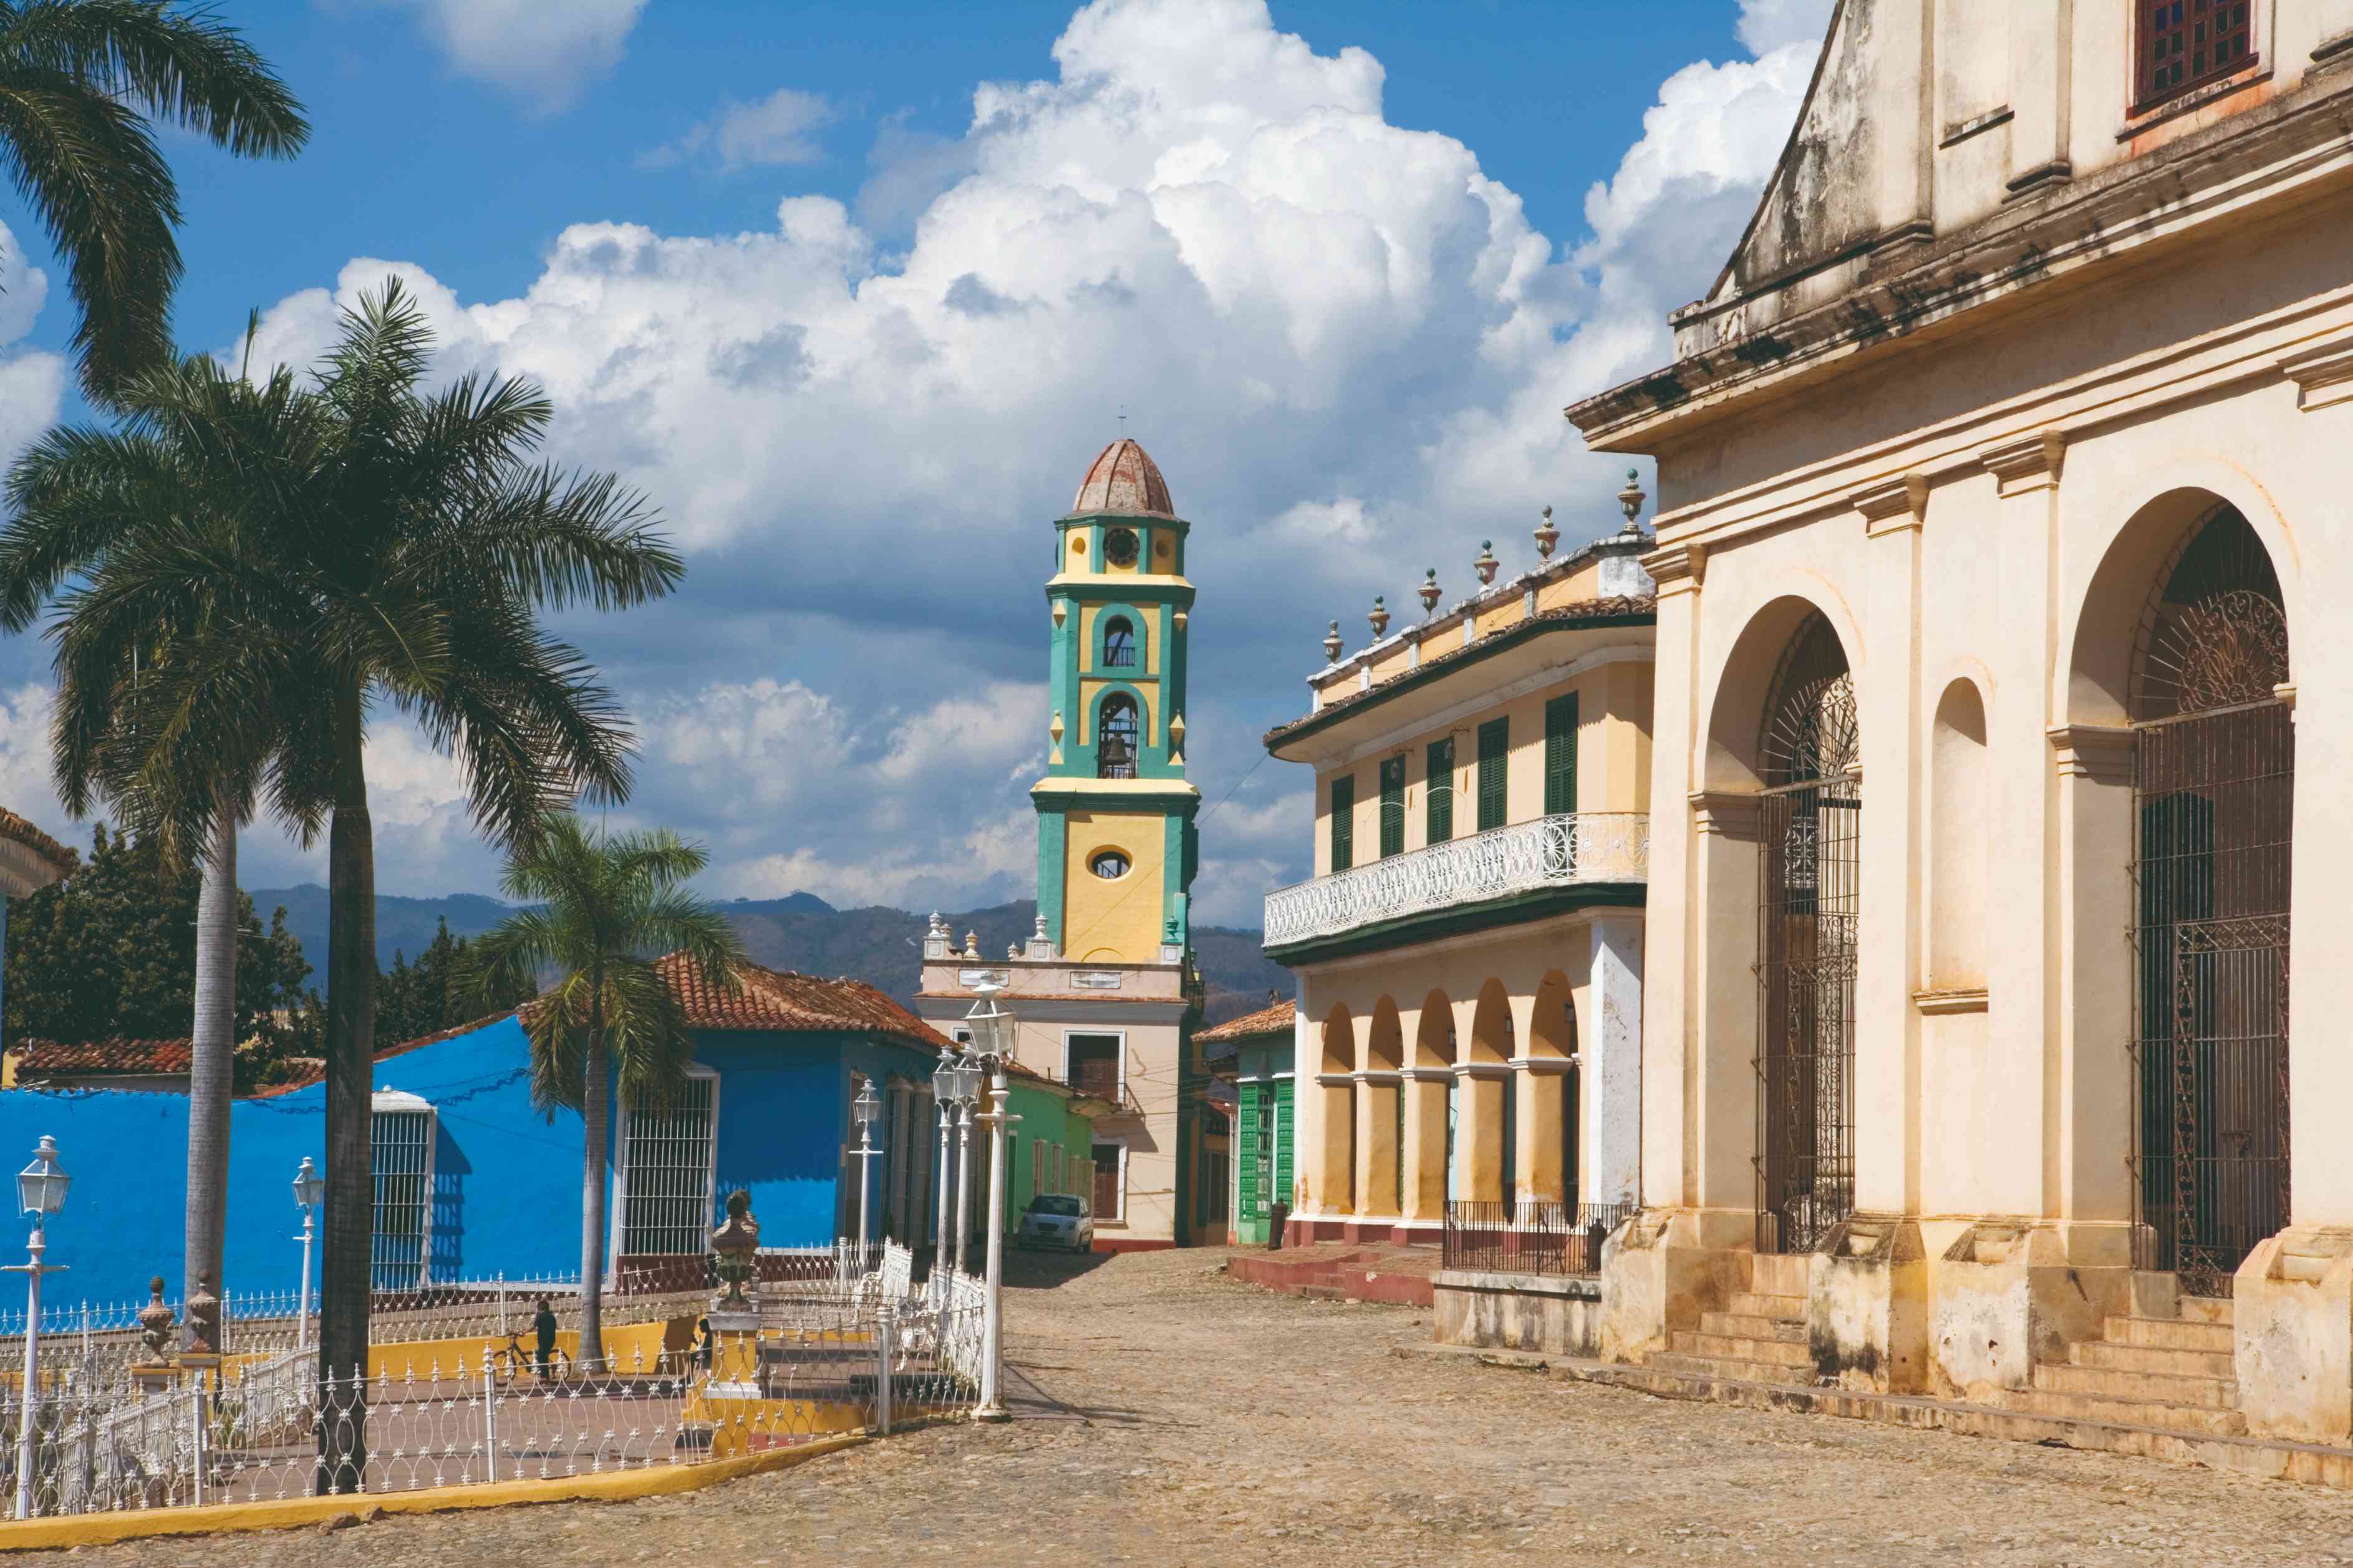 Iglesia de la Santisima Trinidad et Musée national de la Lutte contre les bandits.